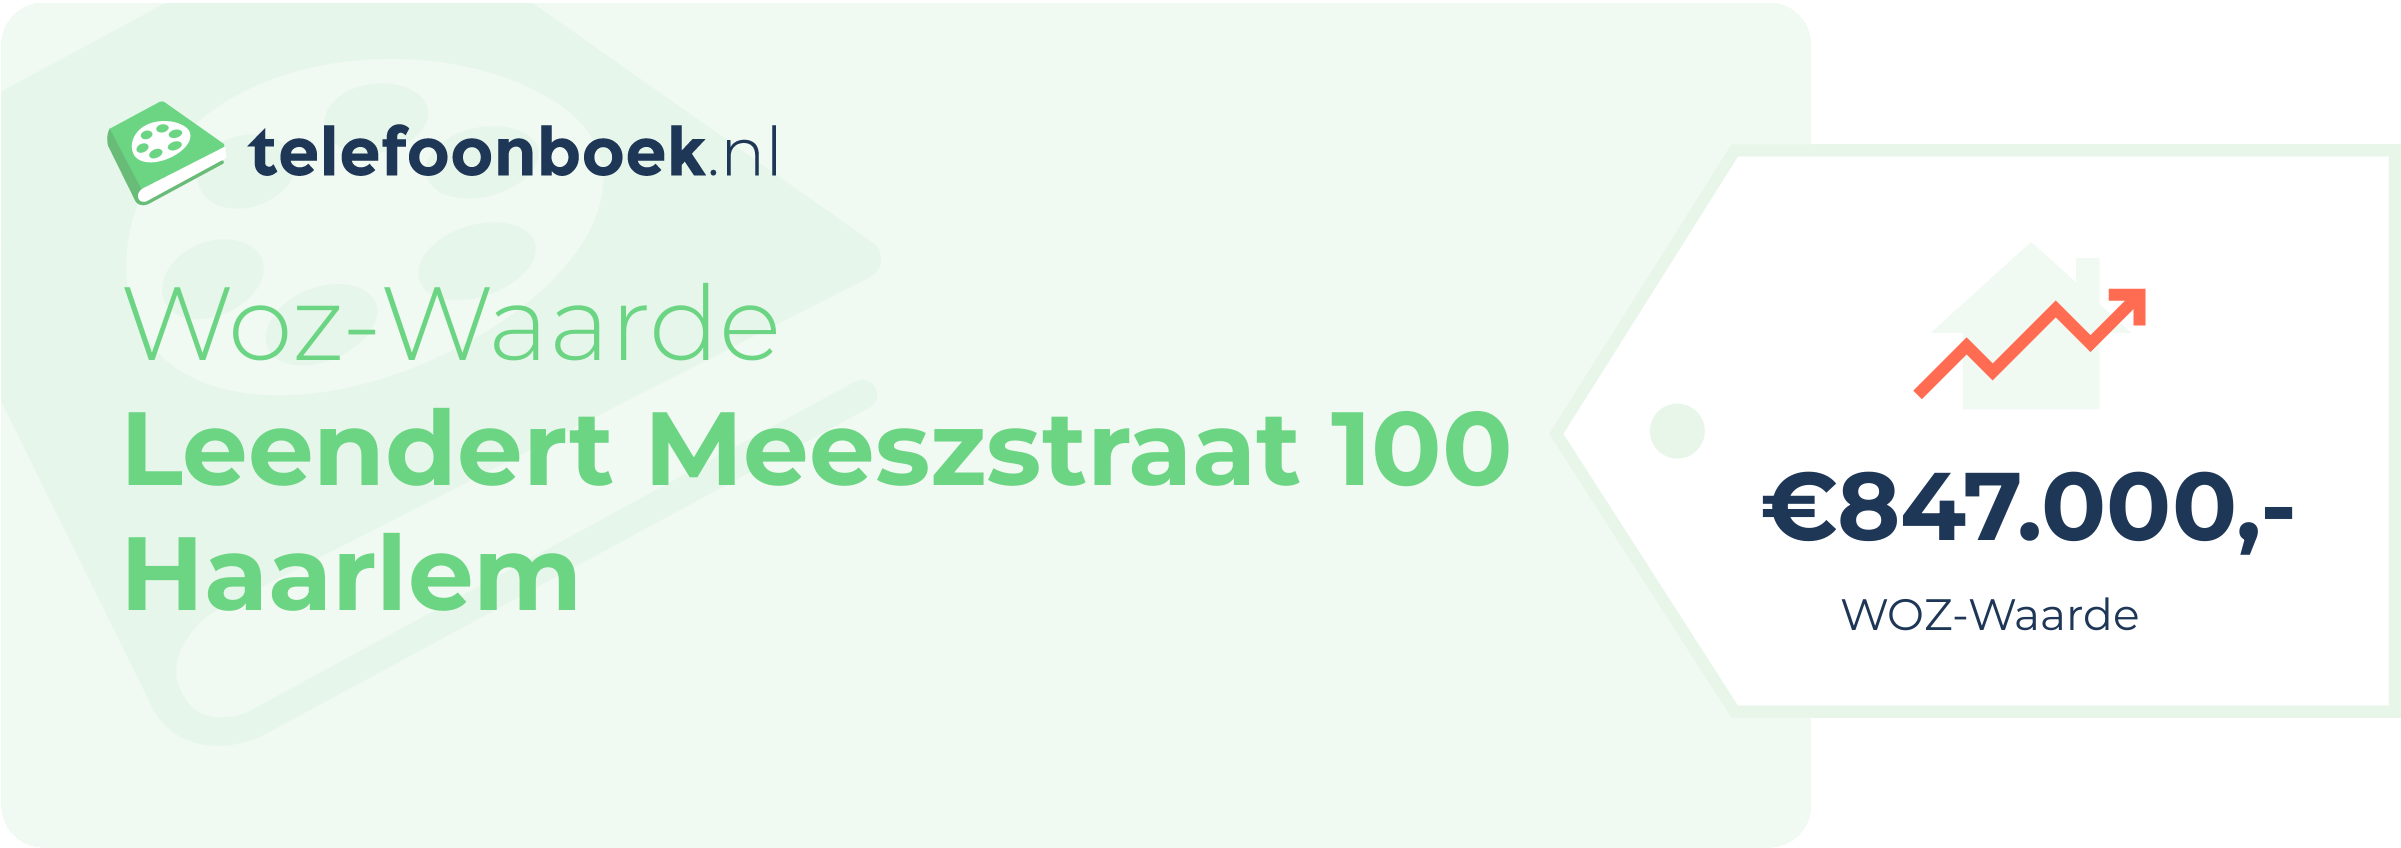 WOZ-waarde Leendert Meeszstraat 100 Haarlem